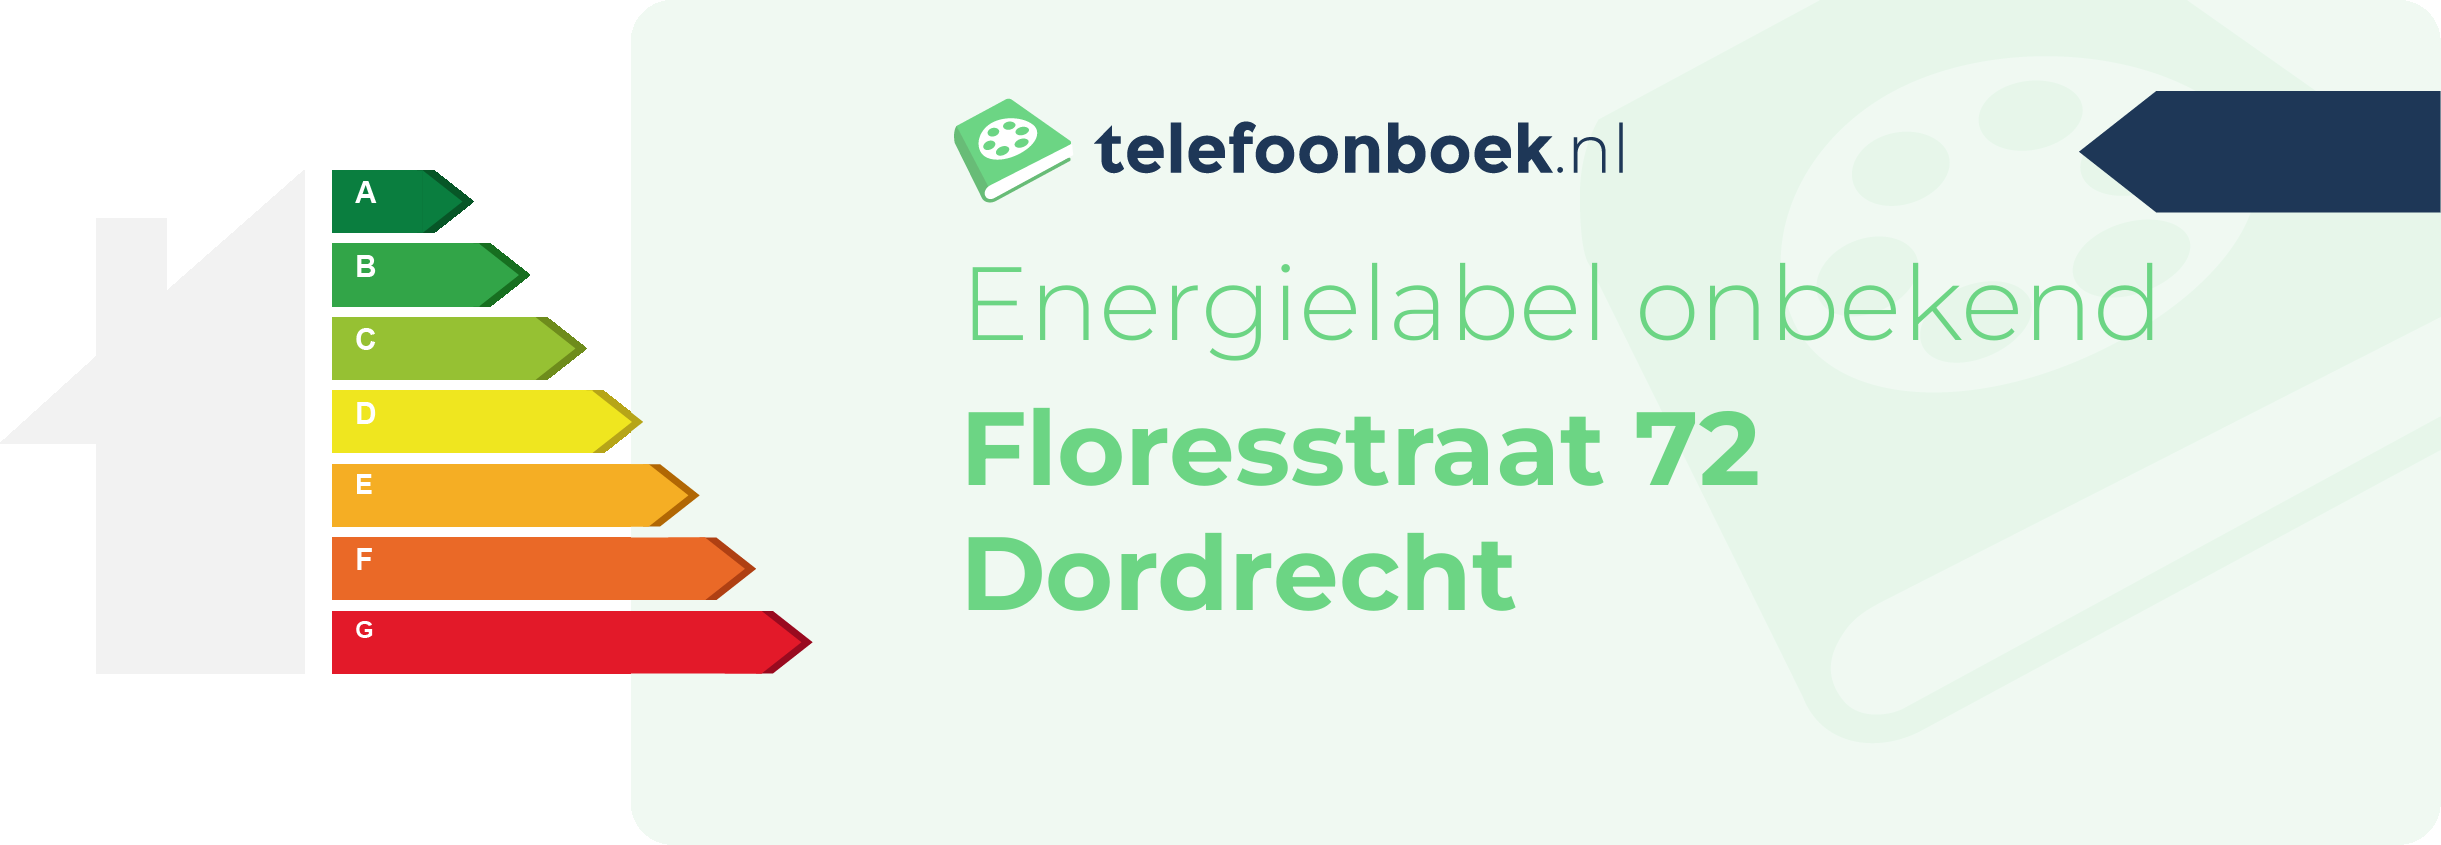 Energielabel Floresstraat 72 Dordrecht